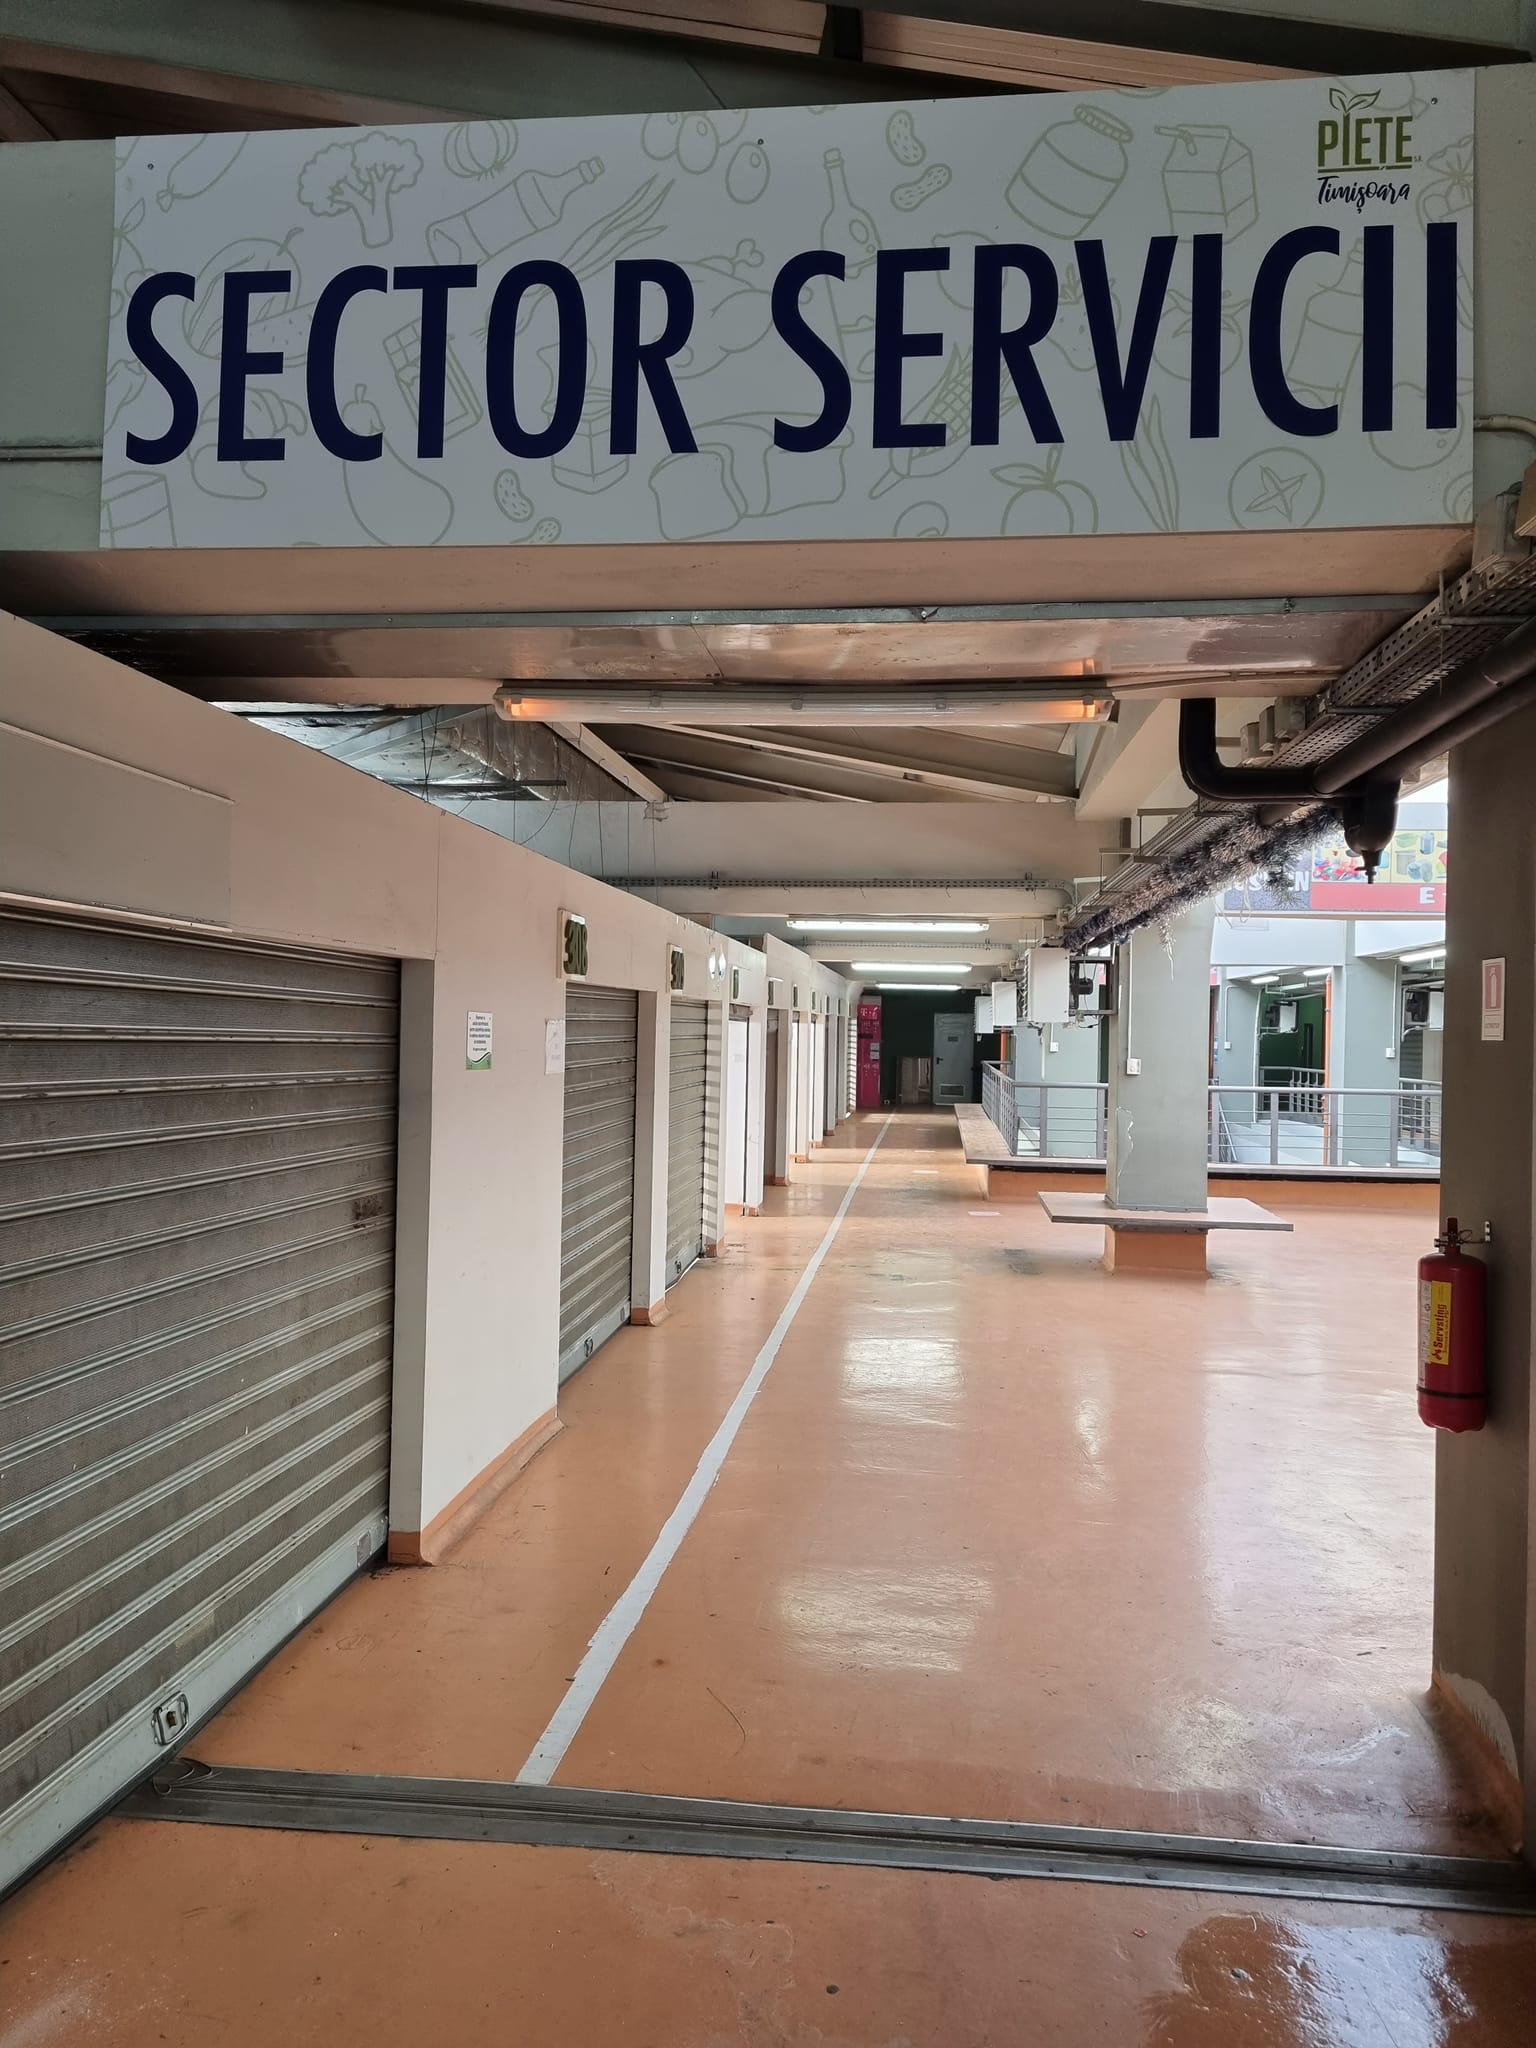 La frizerie sau ceasornicar în Piața Iosefin, la noul Sector Servicii